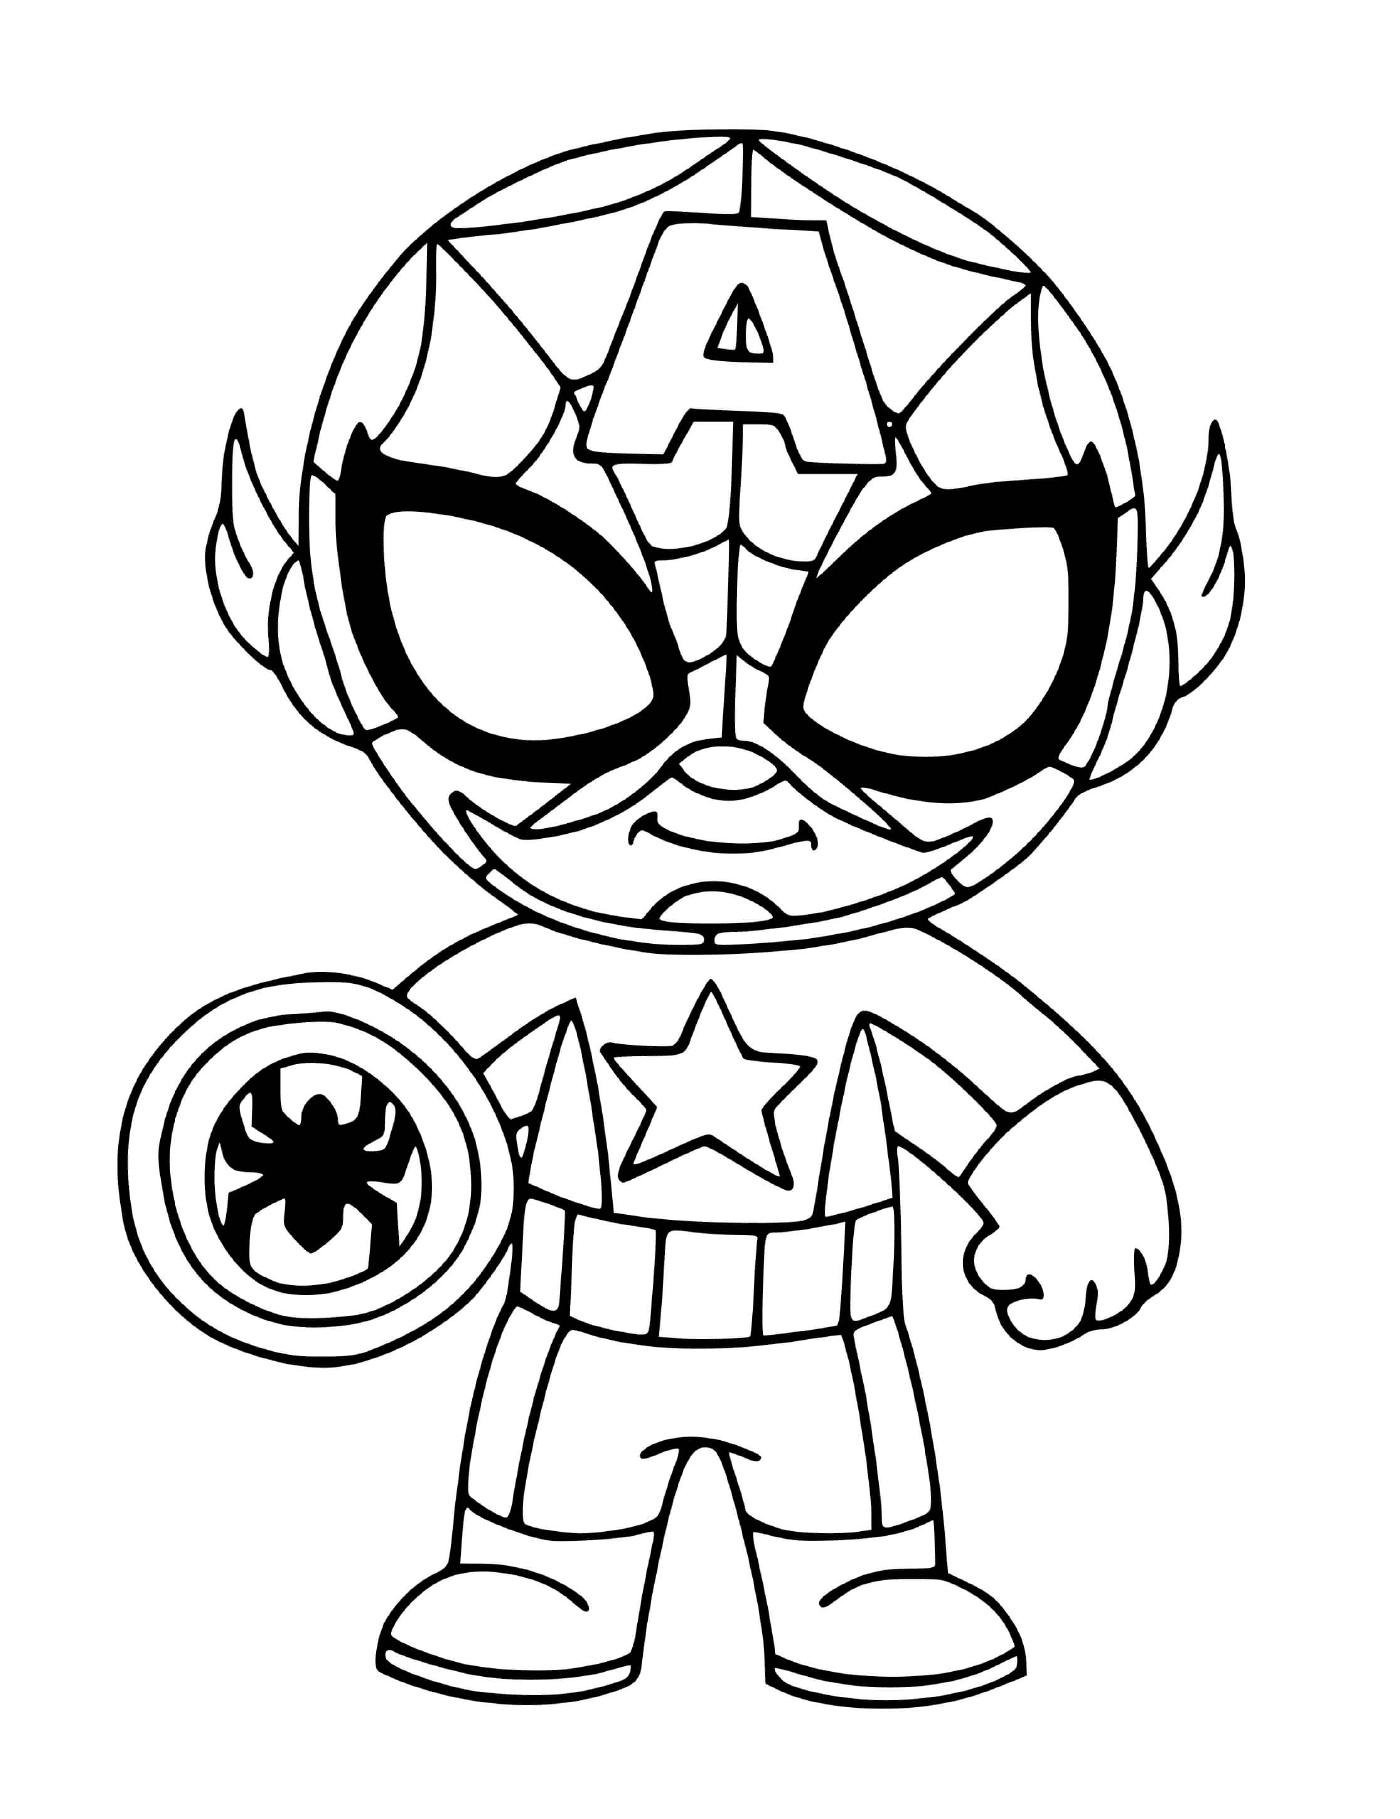  Boysonnet verkleidet als Fusion von Captain America und Spider-Man 